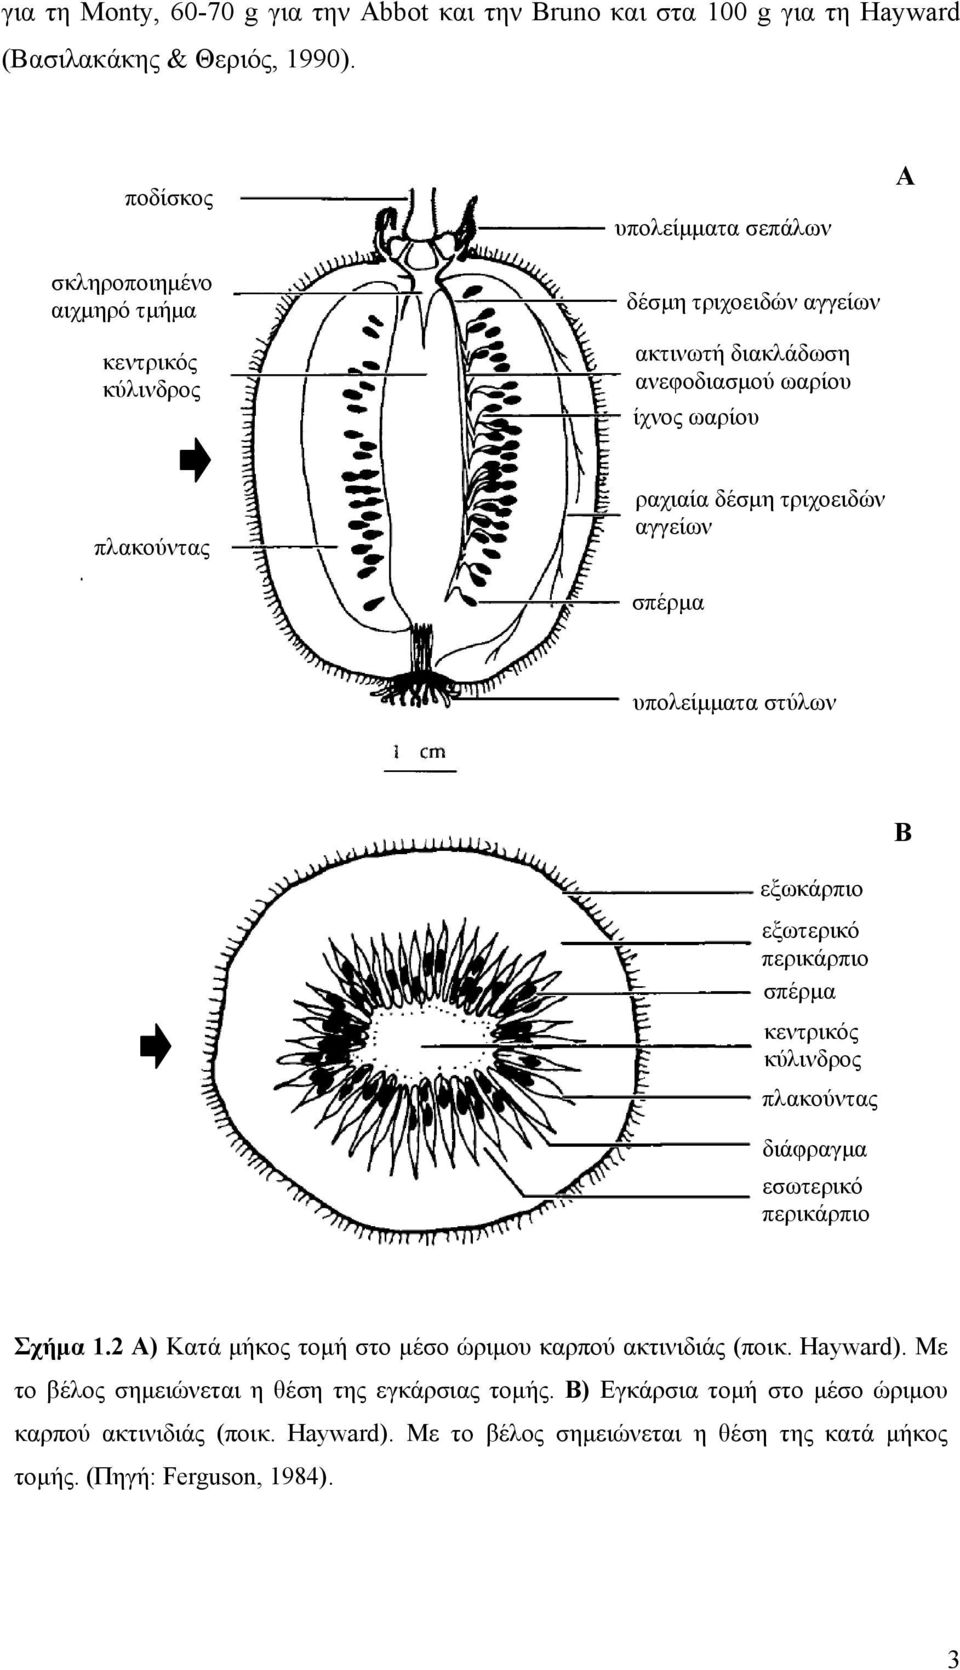 δέσμη τριχοειδών αγγείων σπέρμα υπολείμματα στύλων εξωκάρπιο εξωτερικό περικάρπιο σπέρμα κεντρικός κύλινδρος πλακούντας διάφραγμα εσωτερικό περικάρπιο Β Σχήμα 1.